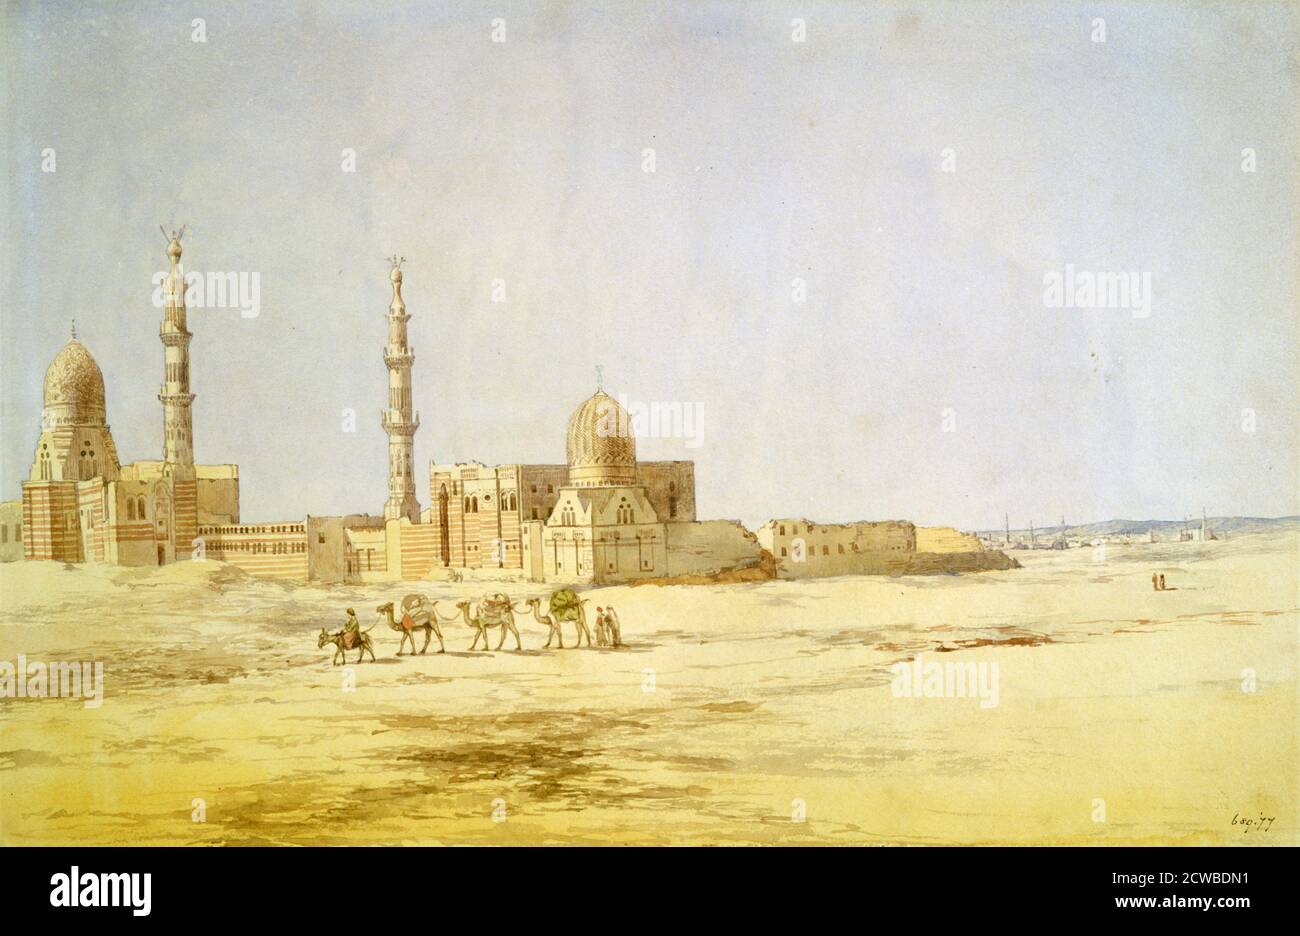 Gräber der Kalifen, Kairo', c1842. Aus der Sammlung des Victoria and Albert Museum, London. Von dem britischen Künstler Richard Dudd. Stockfoto